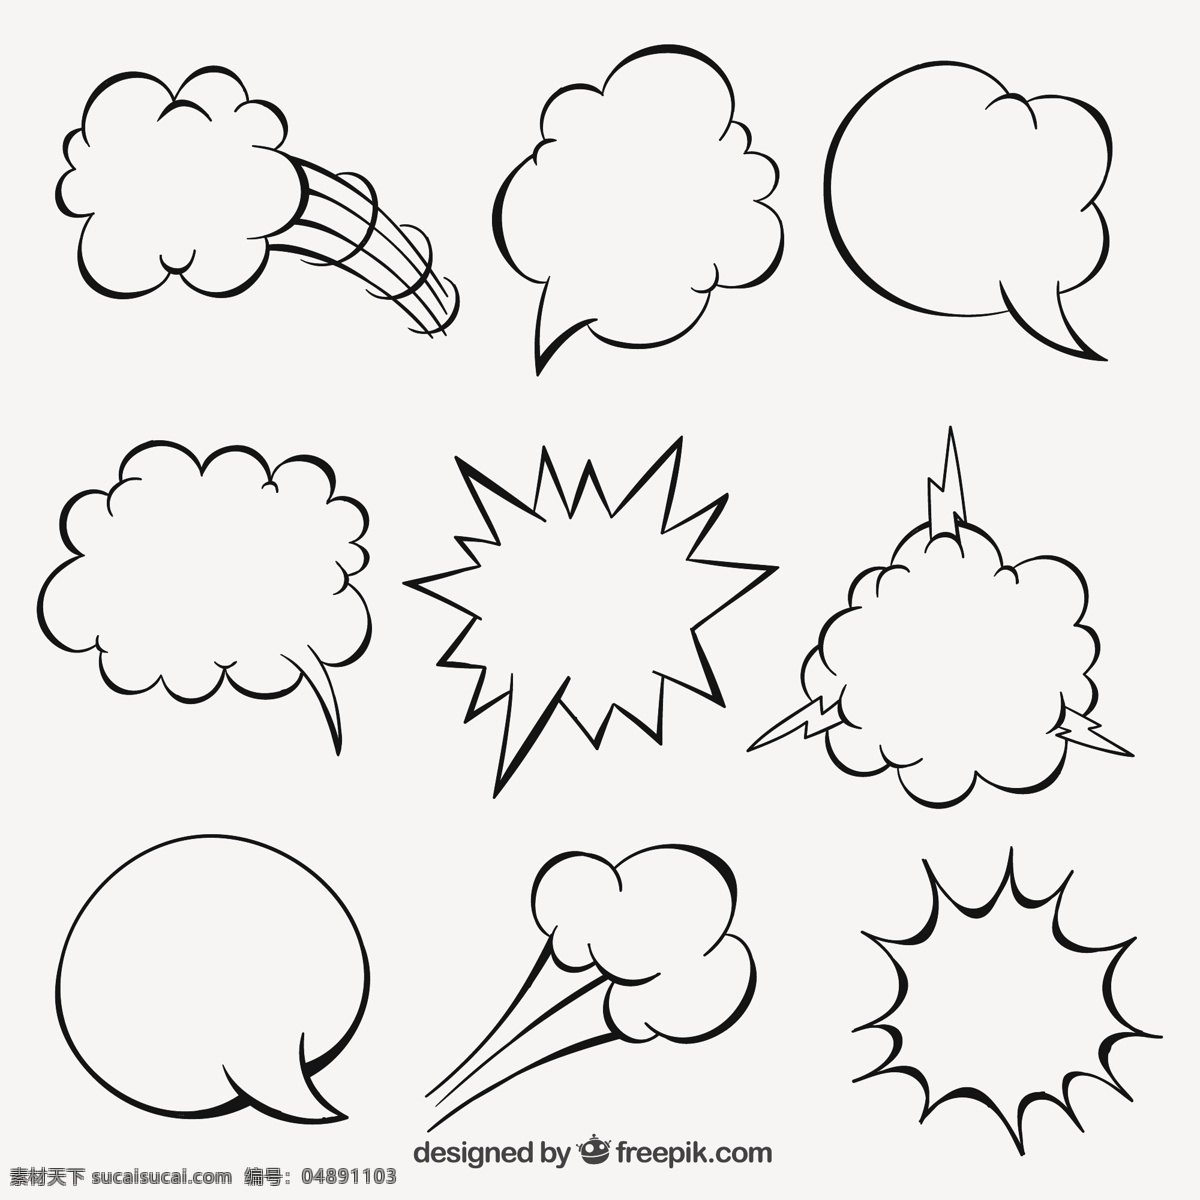 手绘 卡通 语音 泡沫 讲话 绘制 气球 云彩 绘图 爆炸 手工 绘画 演讲 气泡 抽纱